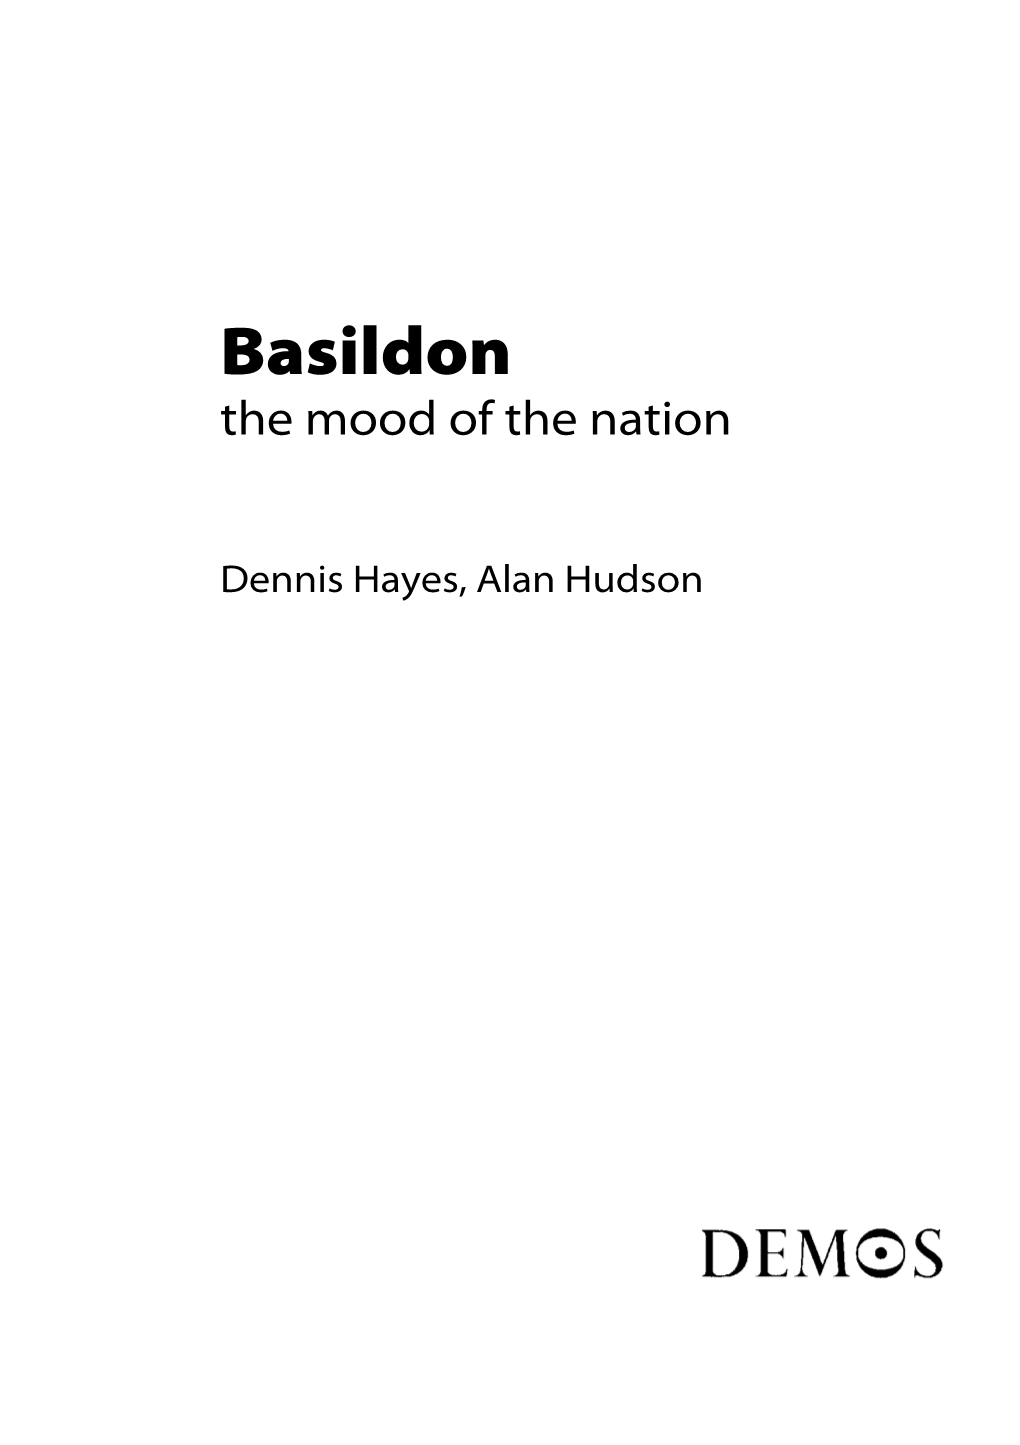 Basildon: the Mood of the Nation